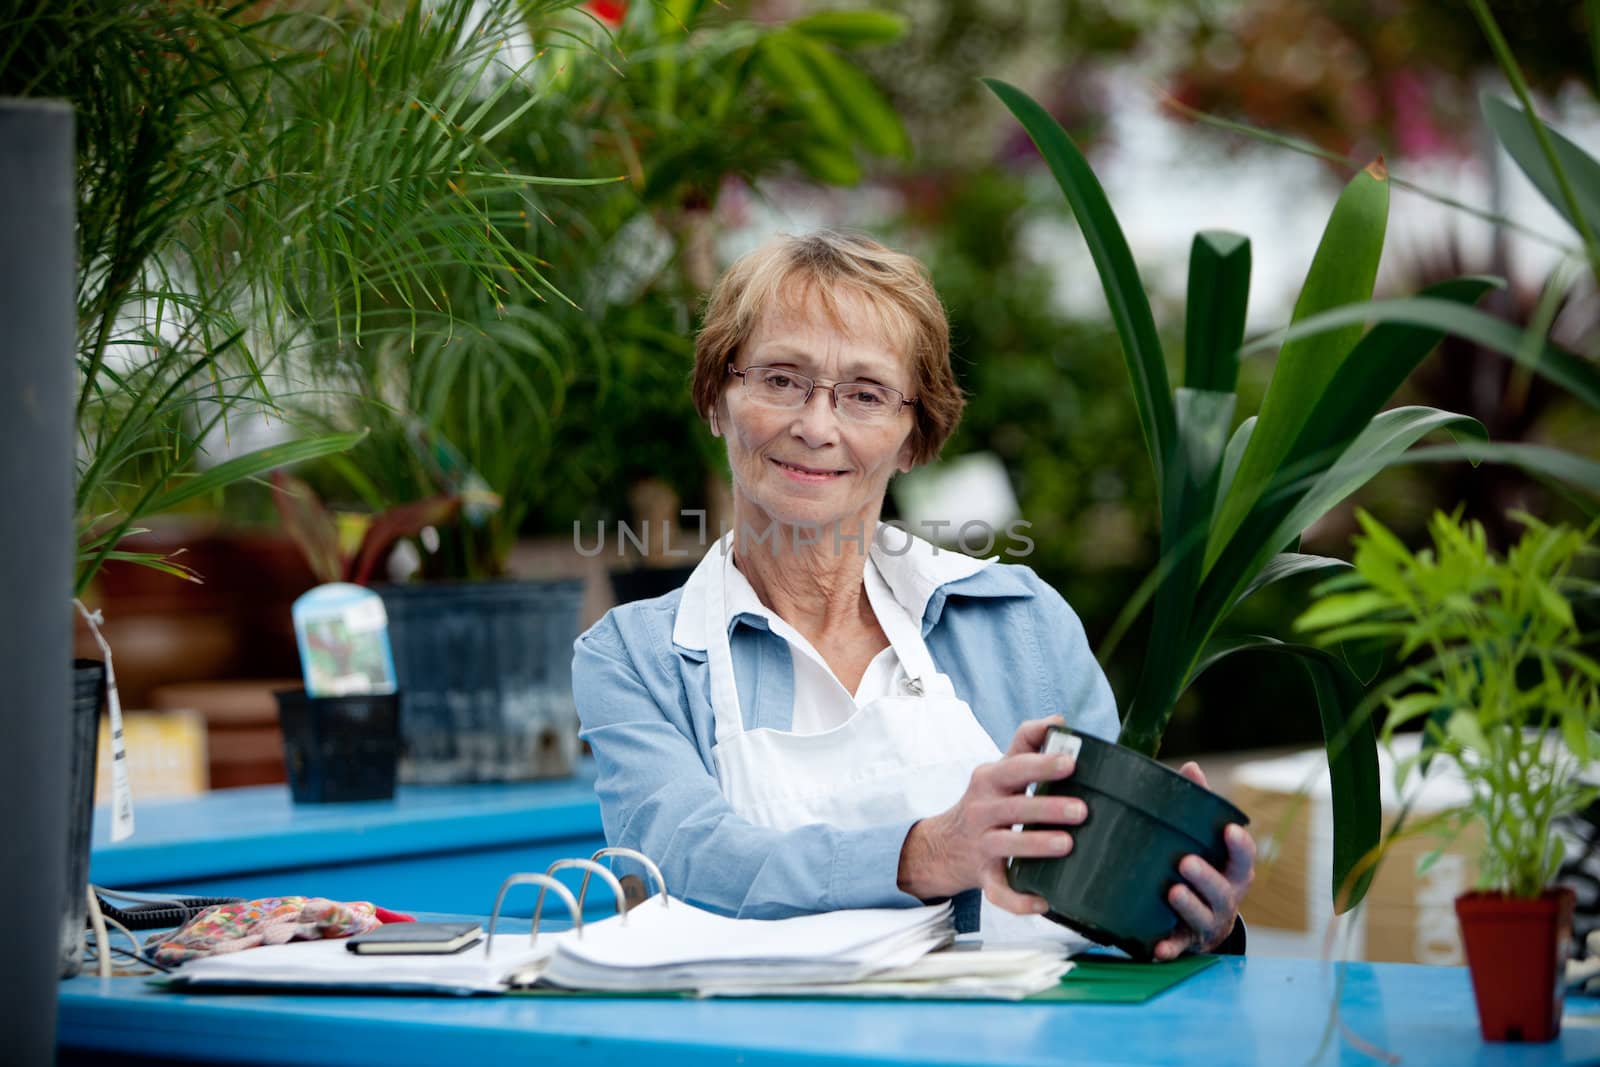 Senior Woman Cashier in Garden Center by leaf